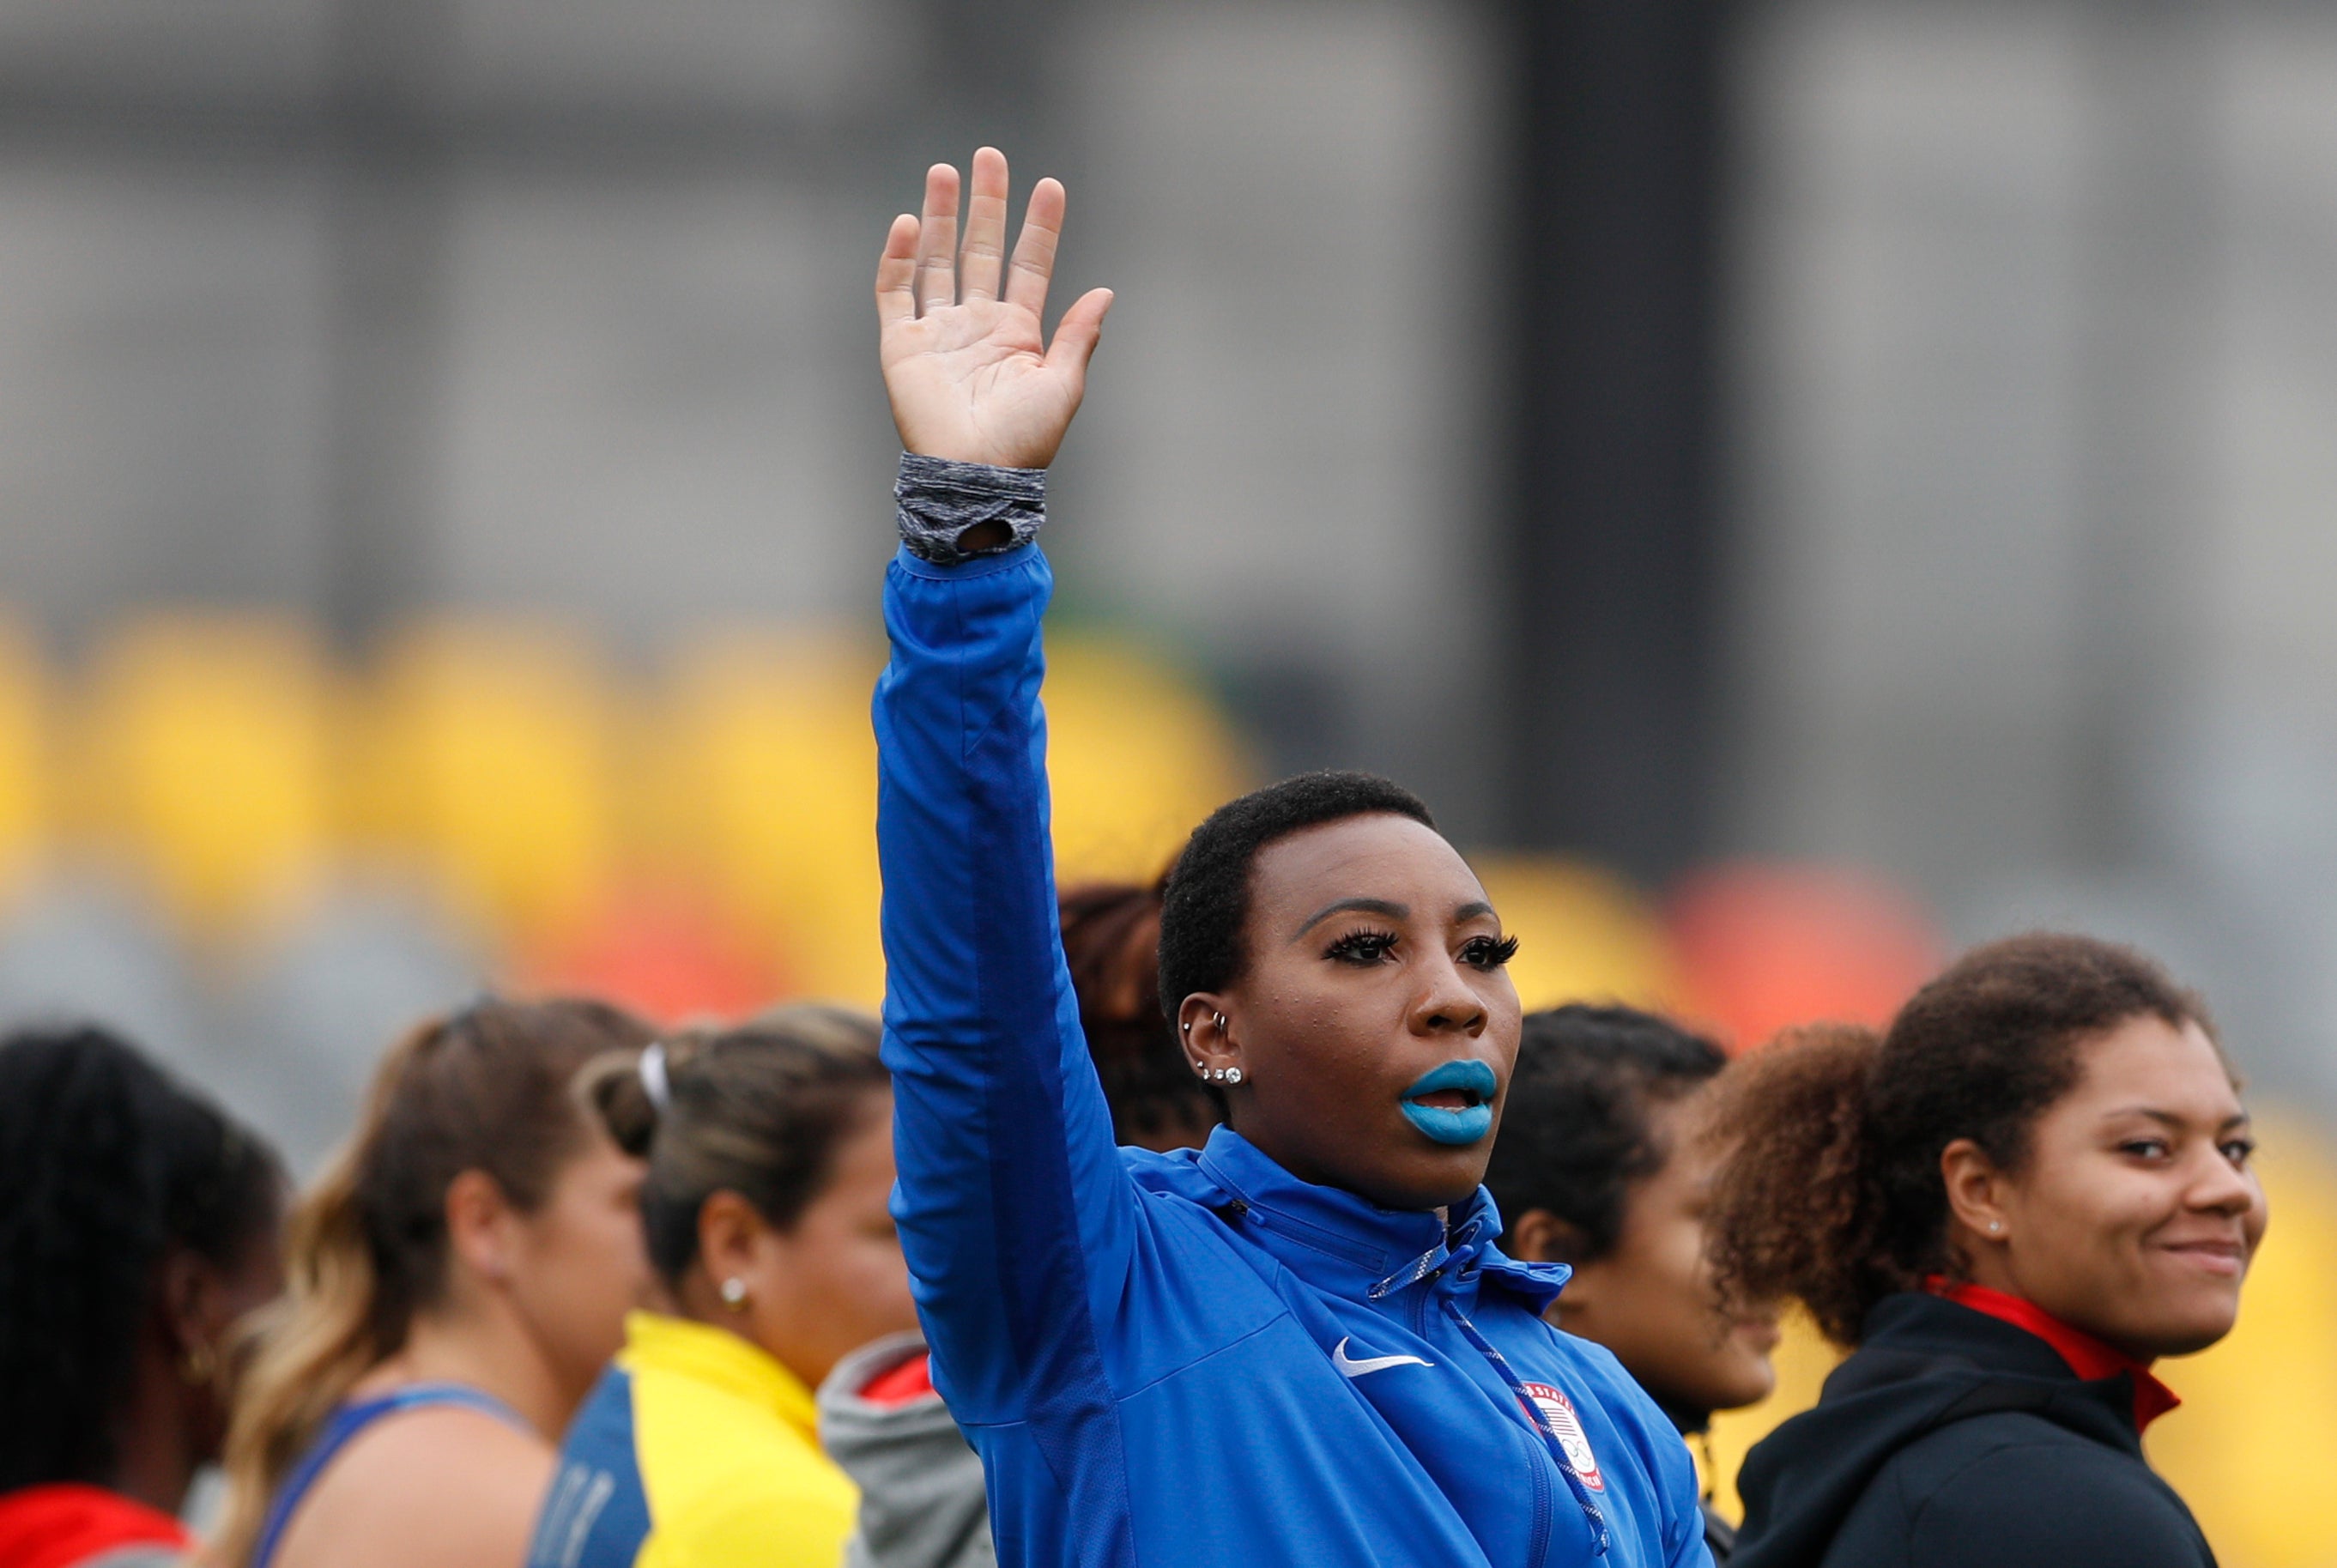 ARCHIVO - En imagen de archivo del 10 de agosto de 2019, la atleta estadounidense Gwen Berry saluda al ser presentada al inicio de la final de lanzamiento de martillo para mujeres en los Juegos Panamericanos de Lima, Perú.&nbsp;